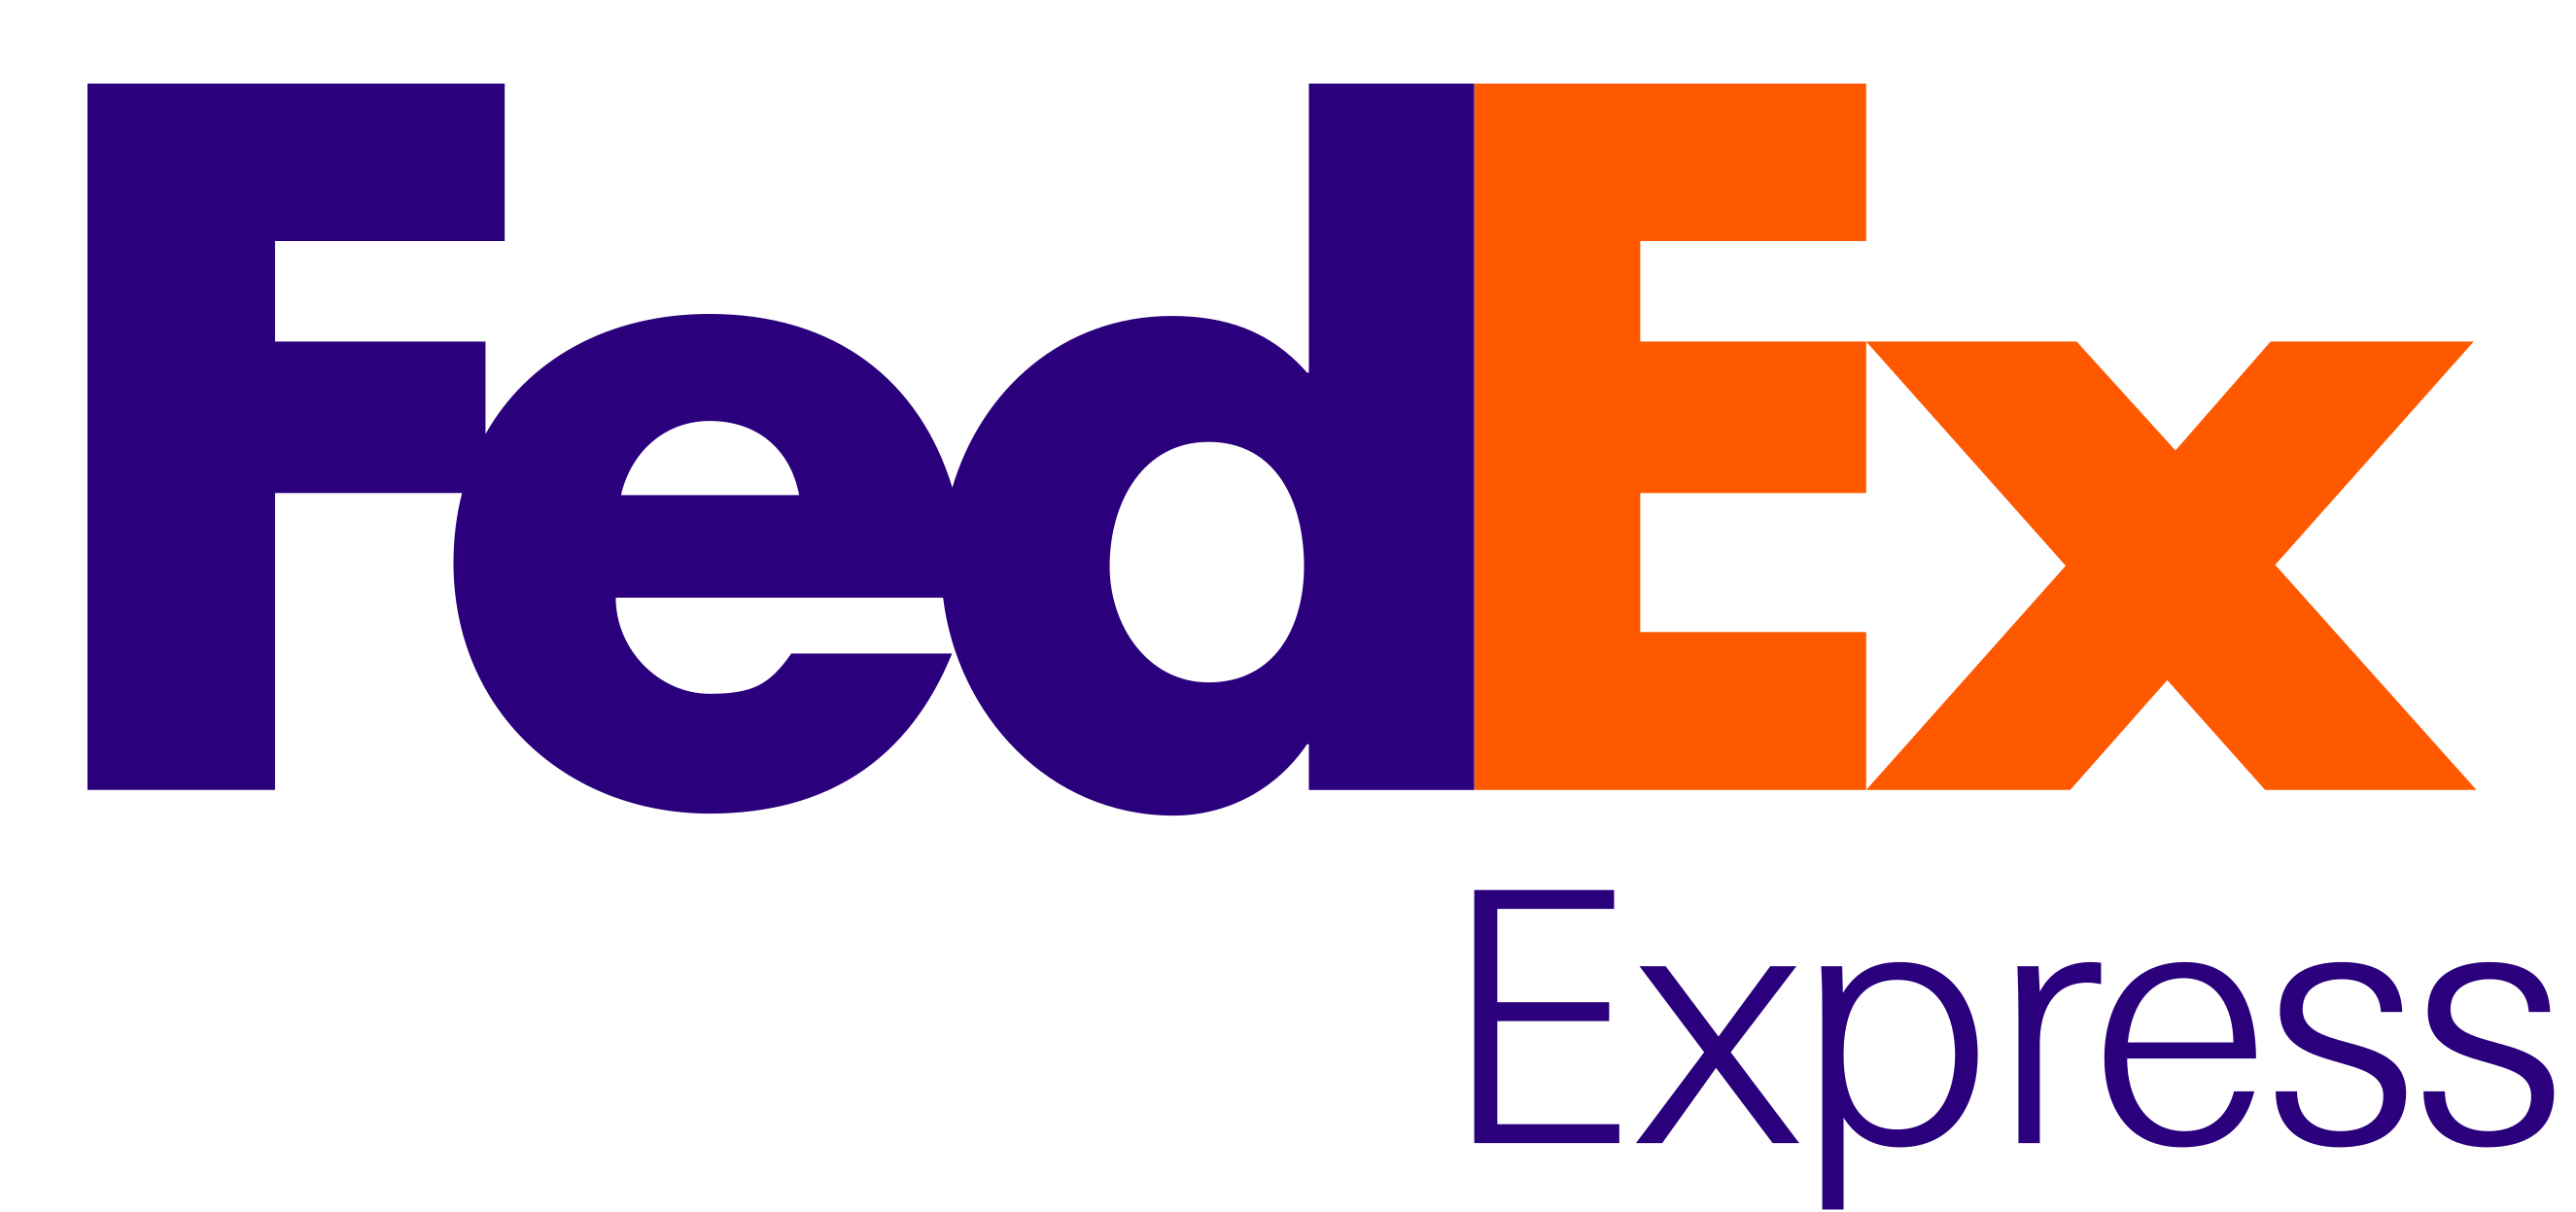 Fedex Express (Versandkosten € 19,90.-)